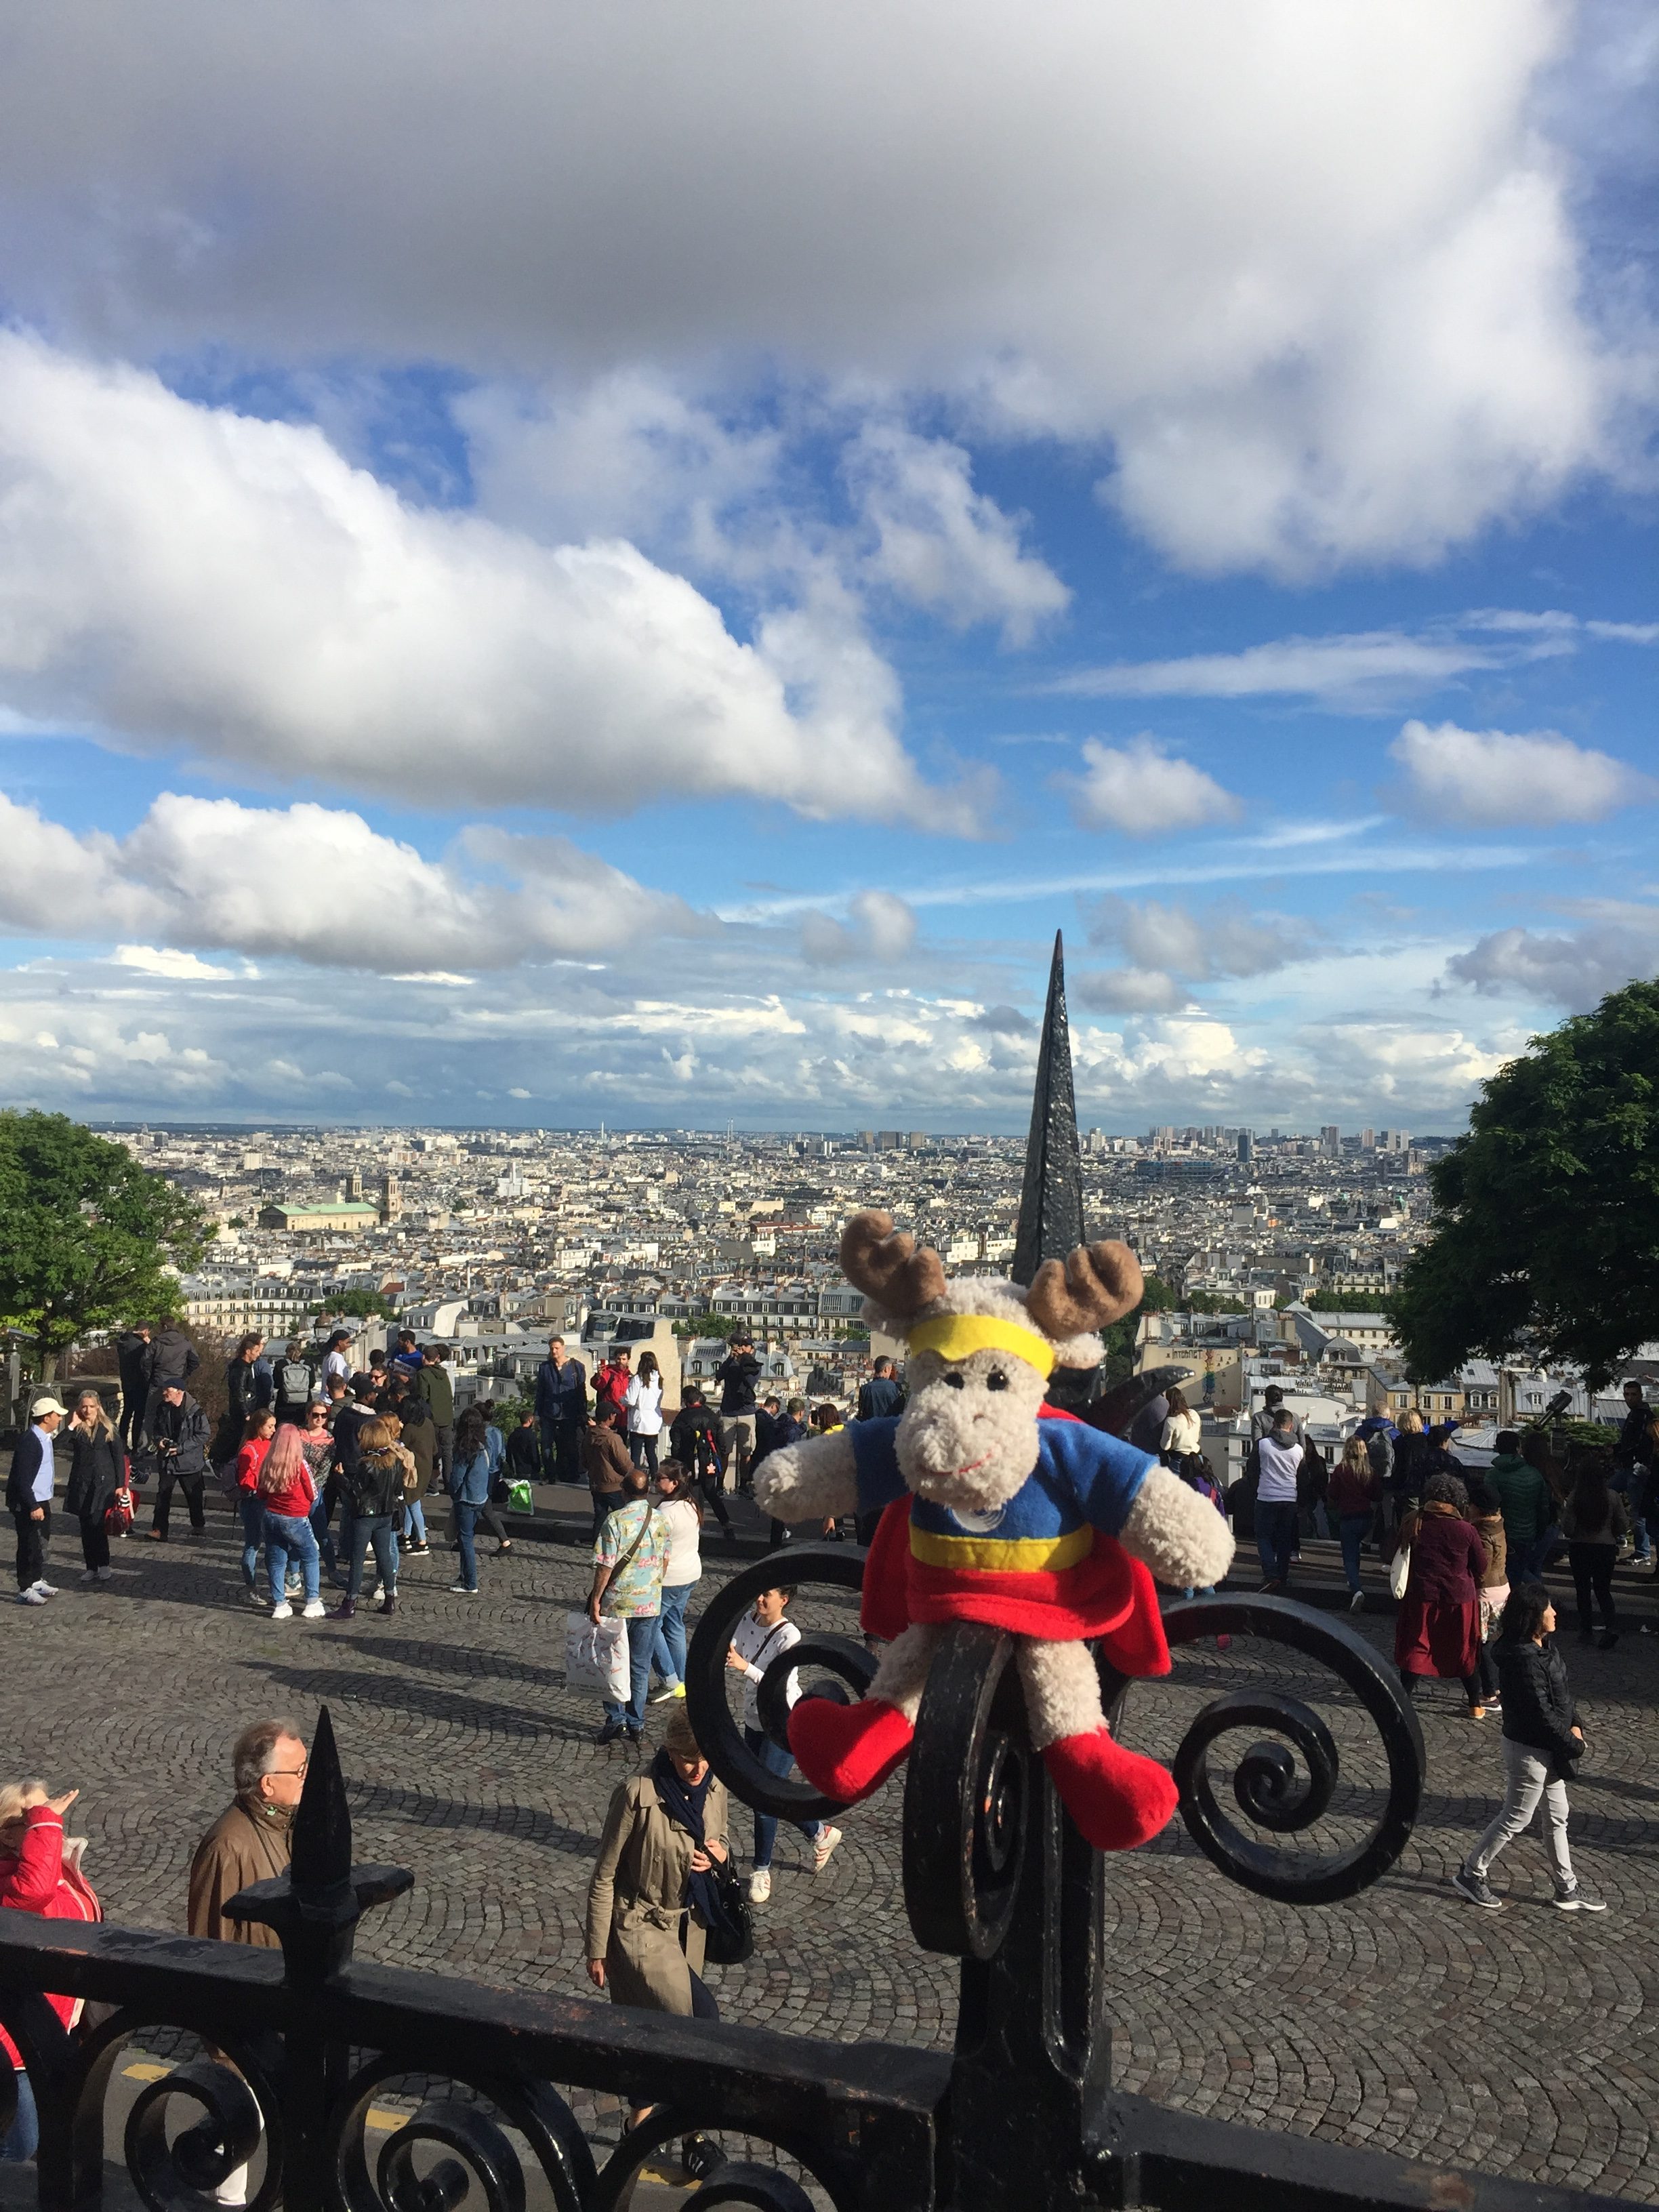 Paris: Blick von der Sacre Coeur auf die Stadt - mit unserem Elch-Maskottchen